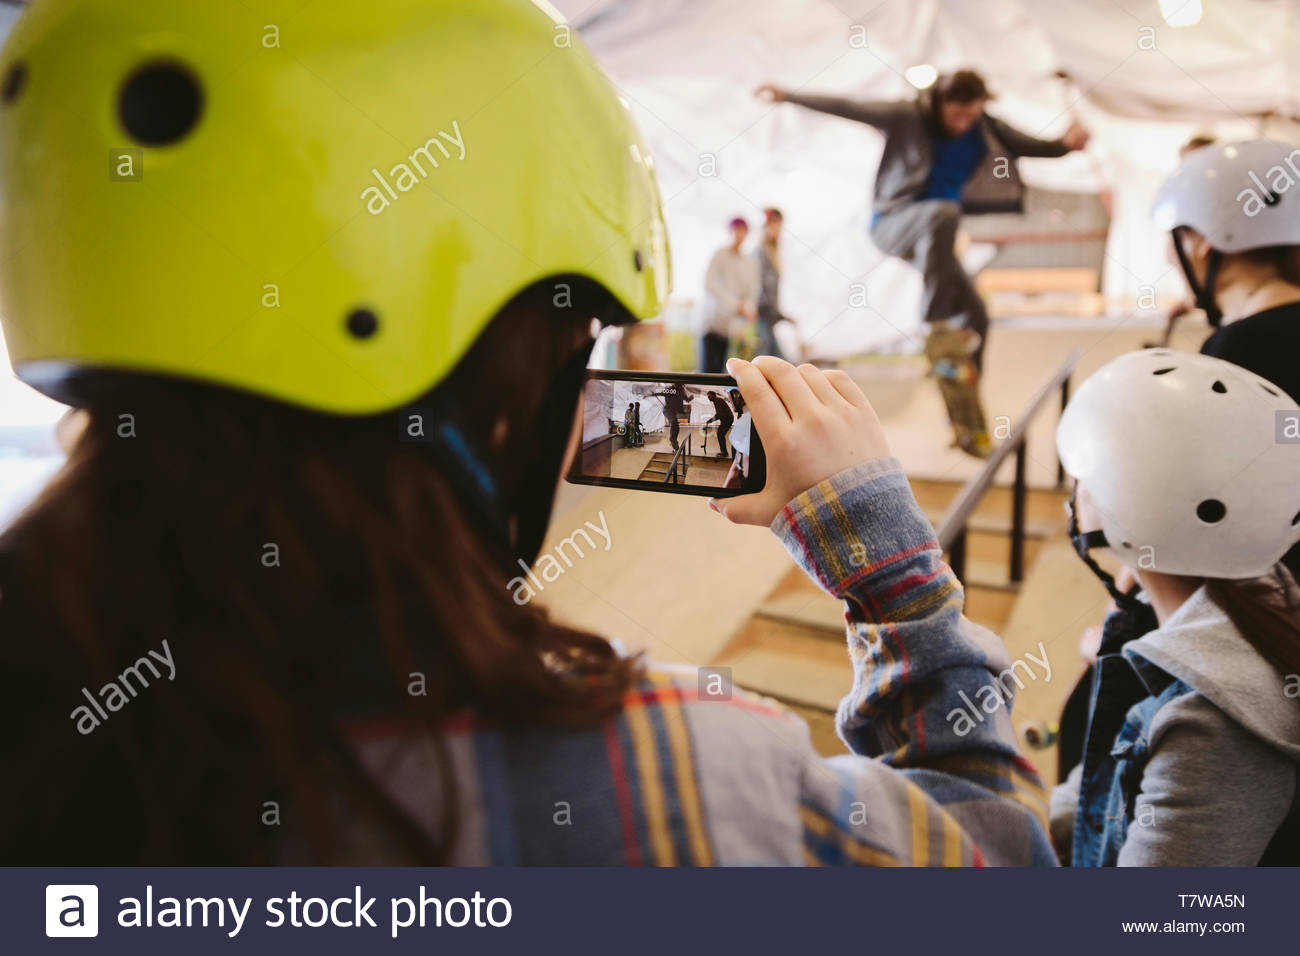 Chico con teléfono con cámara filmando el hombre de skate en el skate park interior Foto de stock